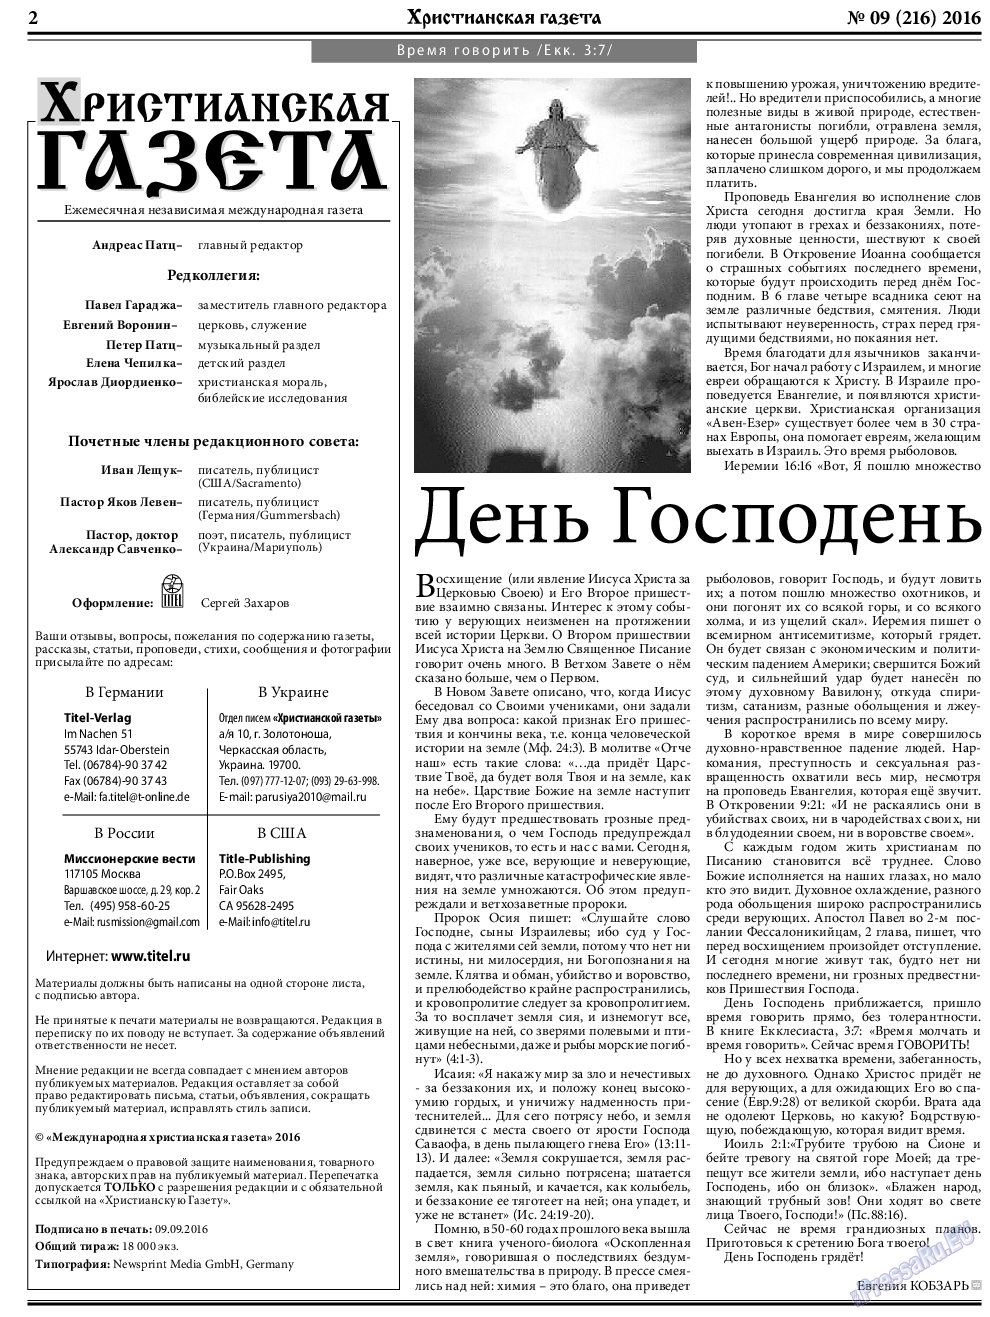 Христианская газета, газета. 2016 №9 стр.2